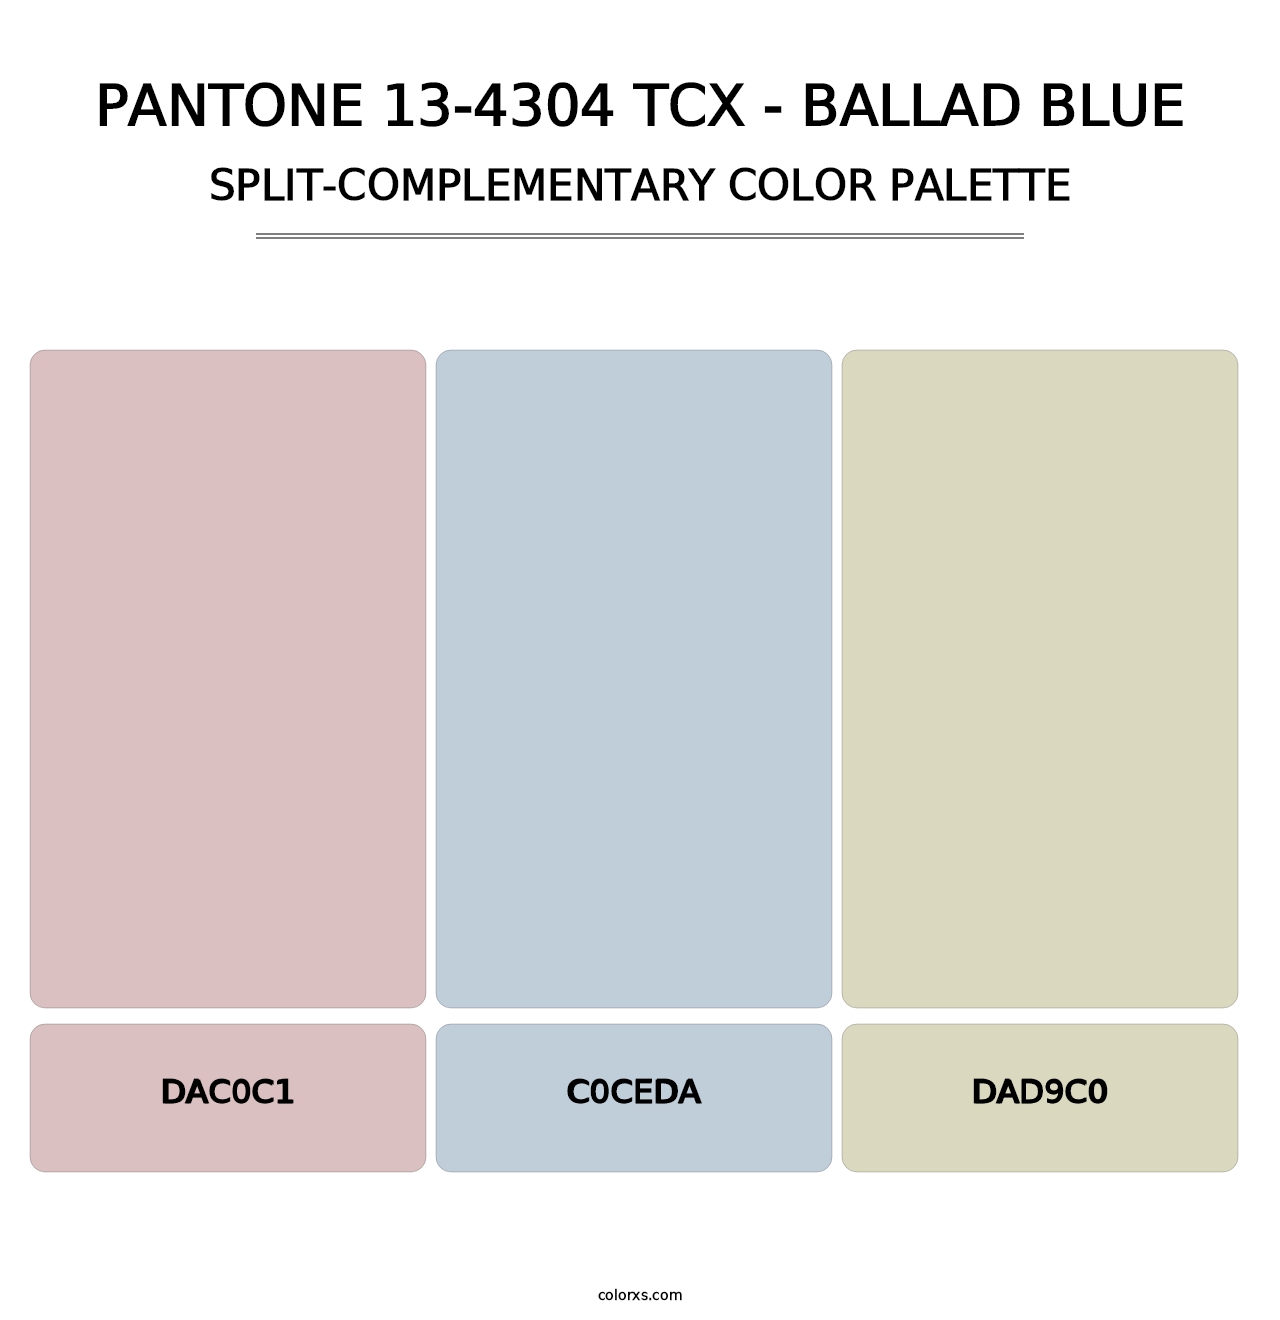 PANTONE 13-4304 TCX - Ballad Blue - Split-Complementary Color Palette